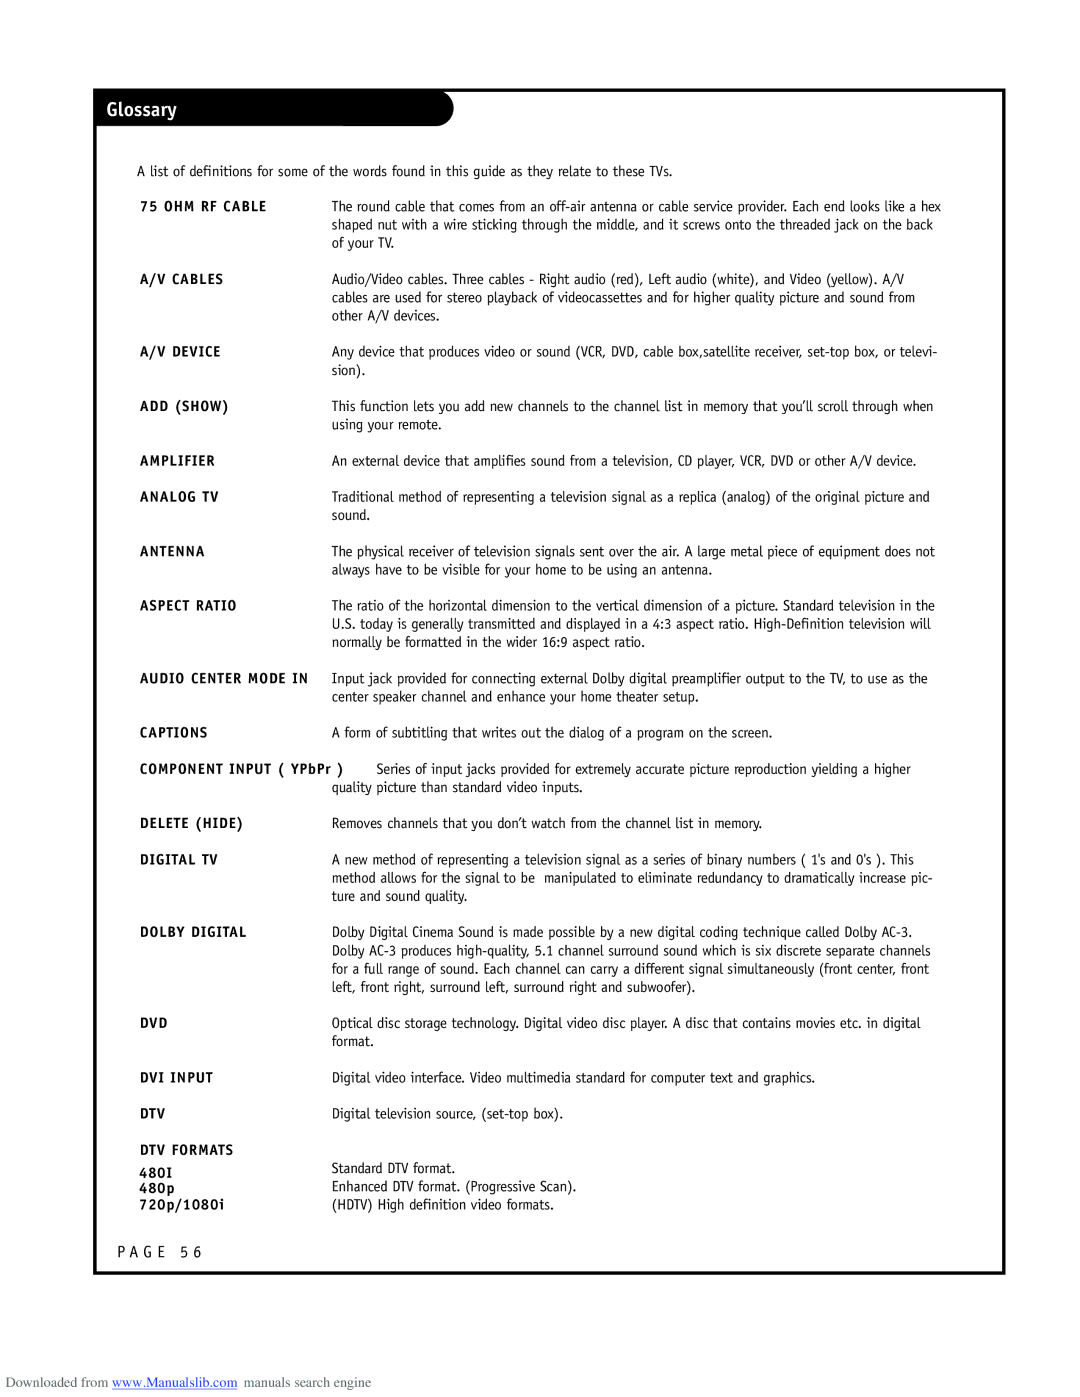 LG Electronics ru-44sz80l owner manual Glossary 